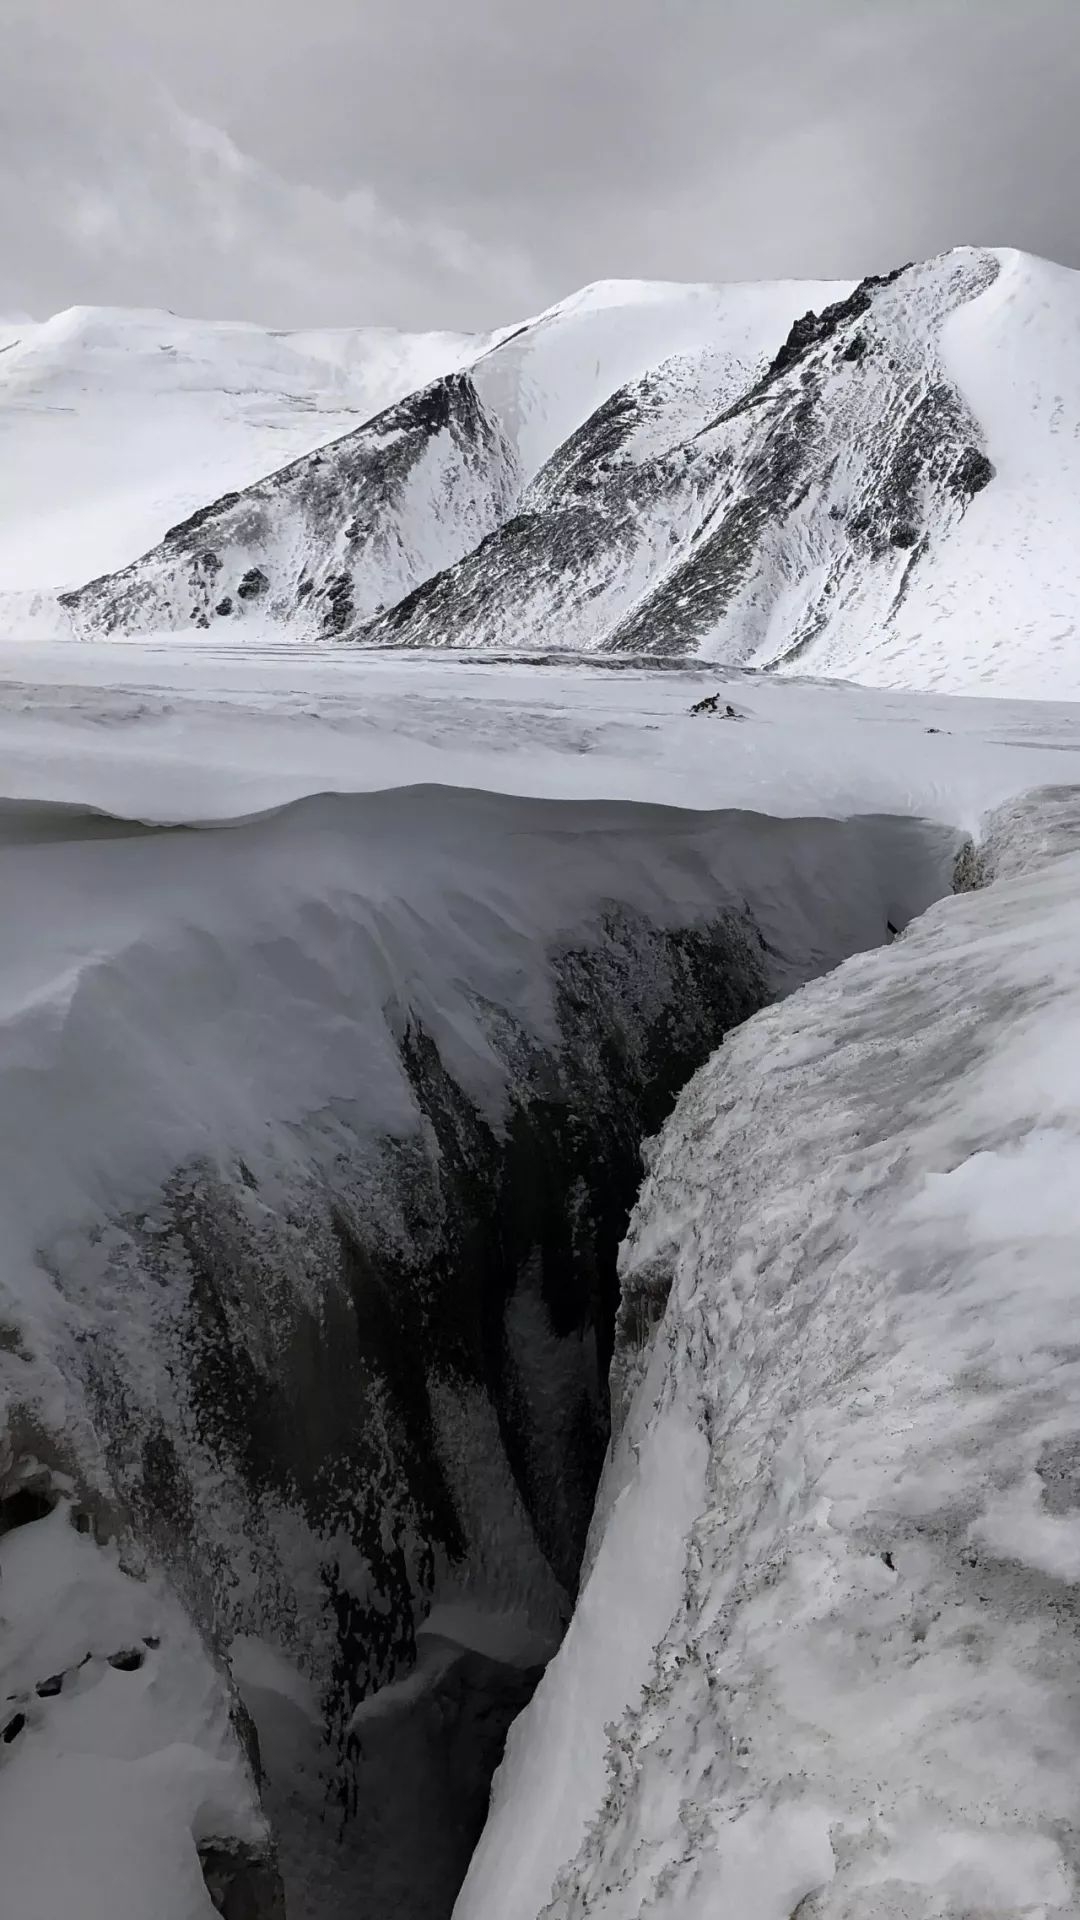 他们找到这条探险级冰川路线，却险些没能走出山……